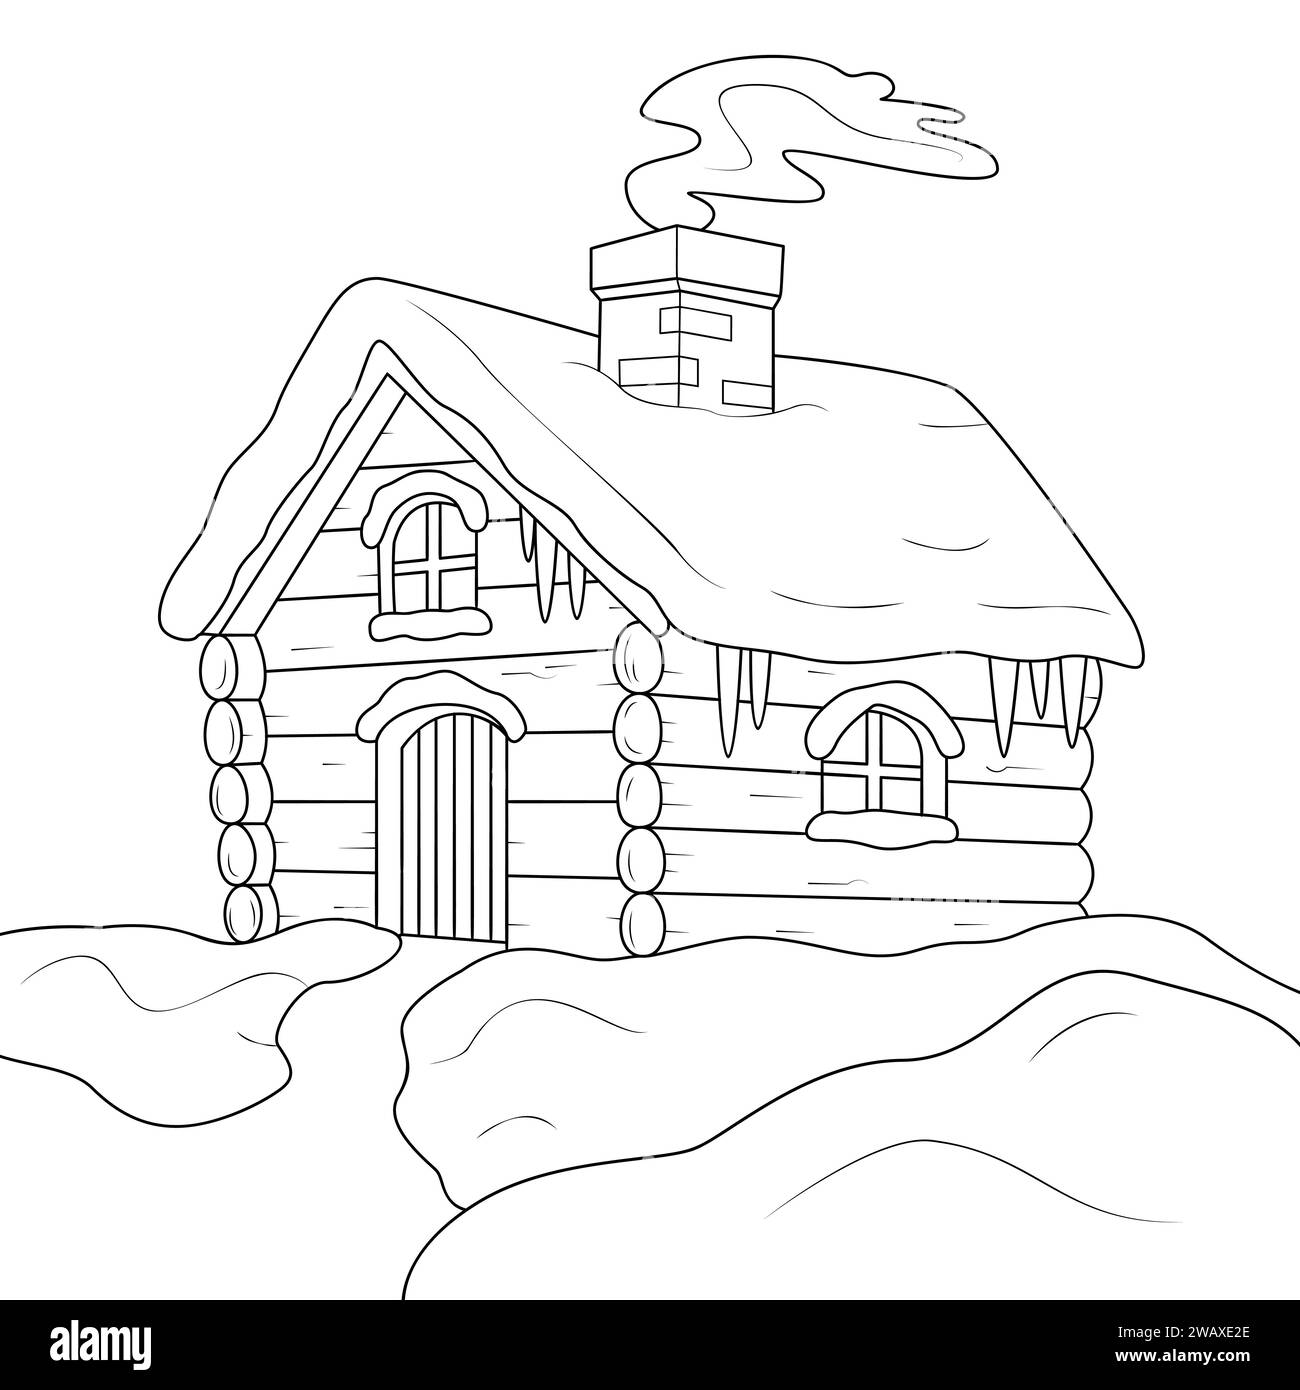 Una piccola casa invernale in legno con un tetto coperto di neve e fumo proveniente da un'immagine lineare vettoriale del camino per la colorazione. Profilo. Bianco e nero. Pagina colori Art Therapy. Illustrazione vettoriale Illustrazione Vettoriale